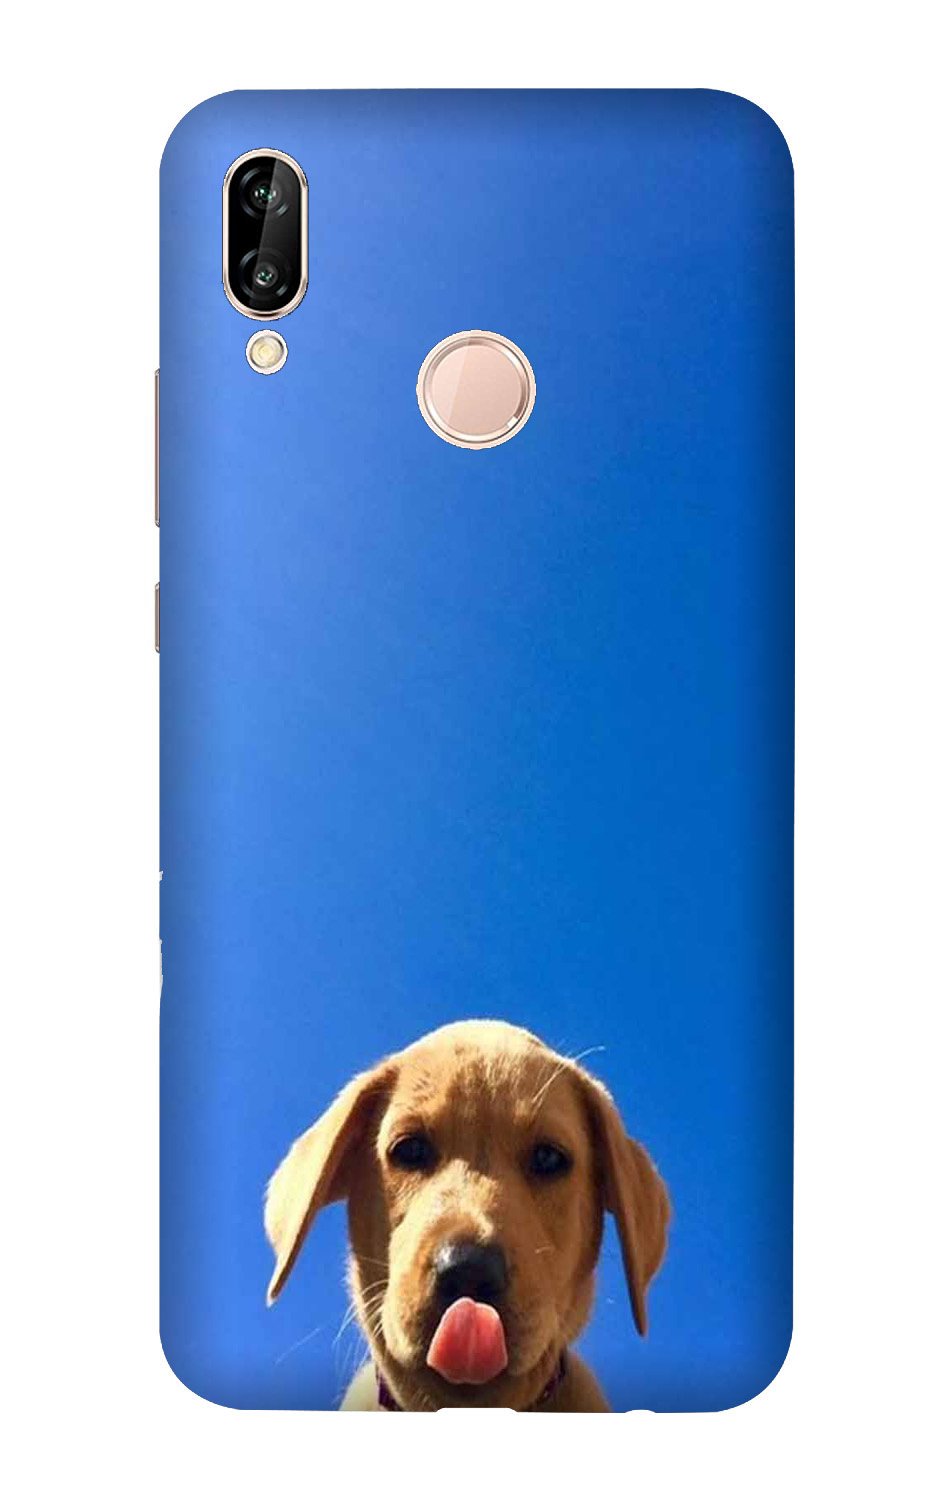 Dog Mobile Back Case for Huawei Y9 (2019) (Design - 332)